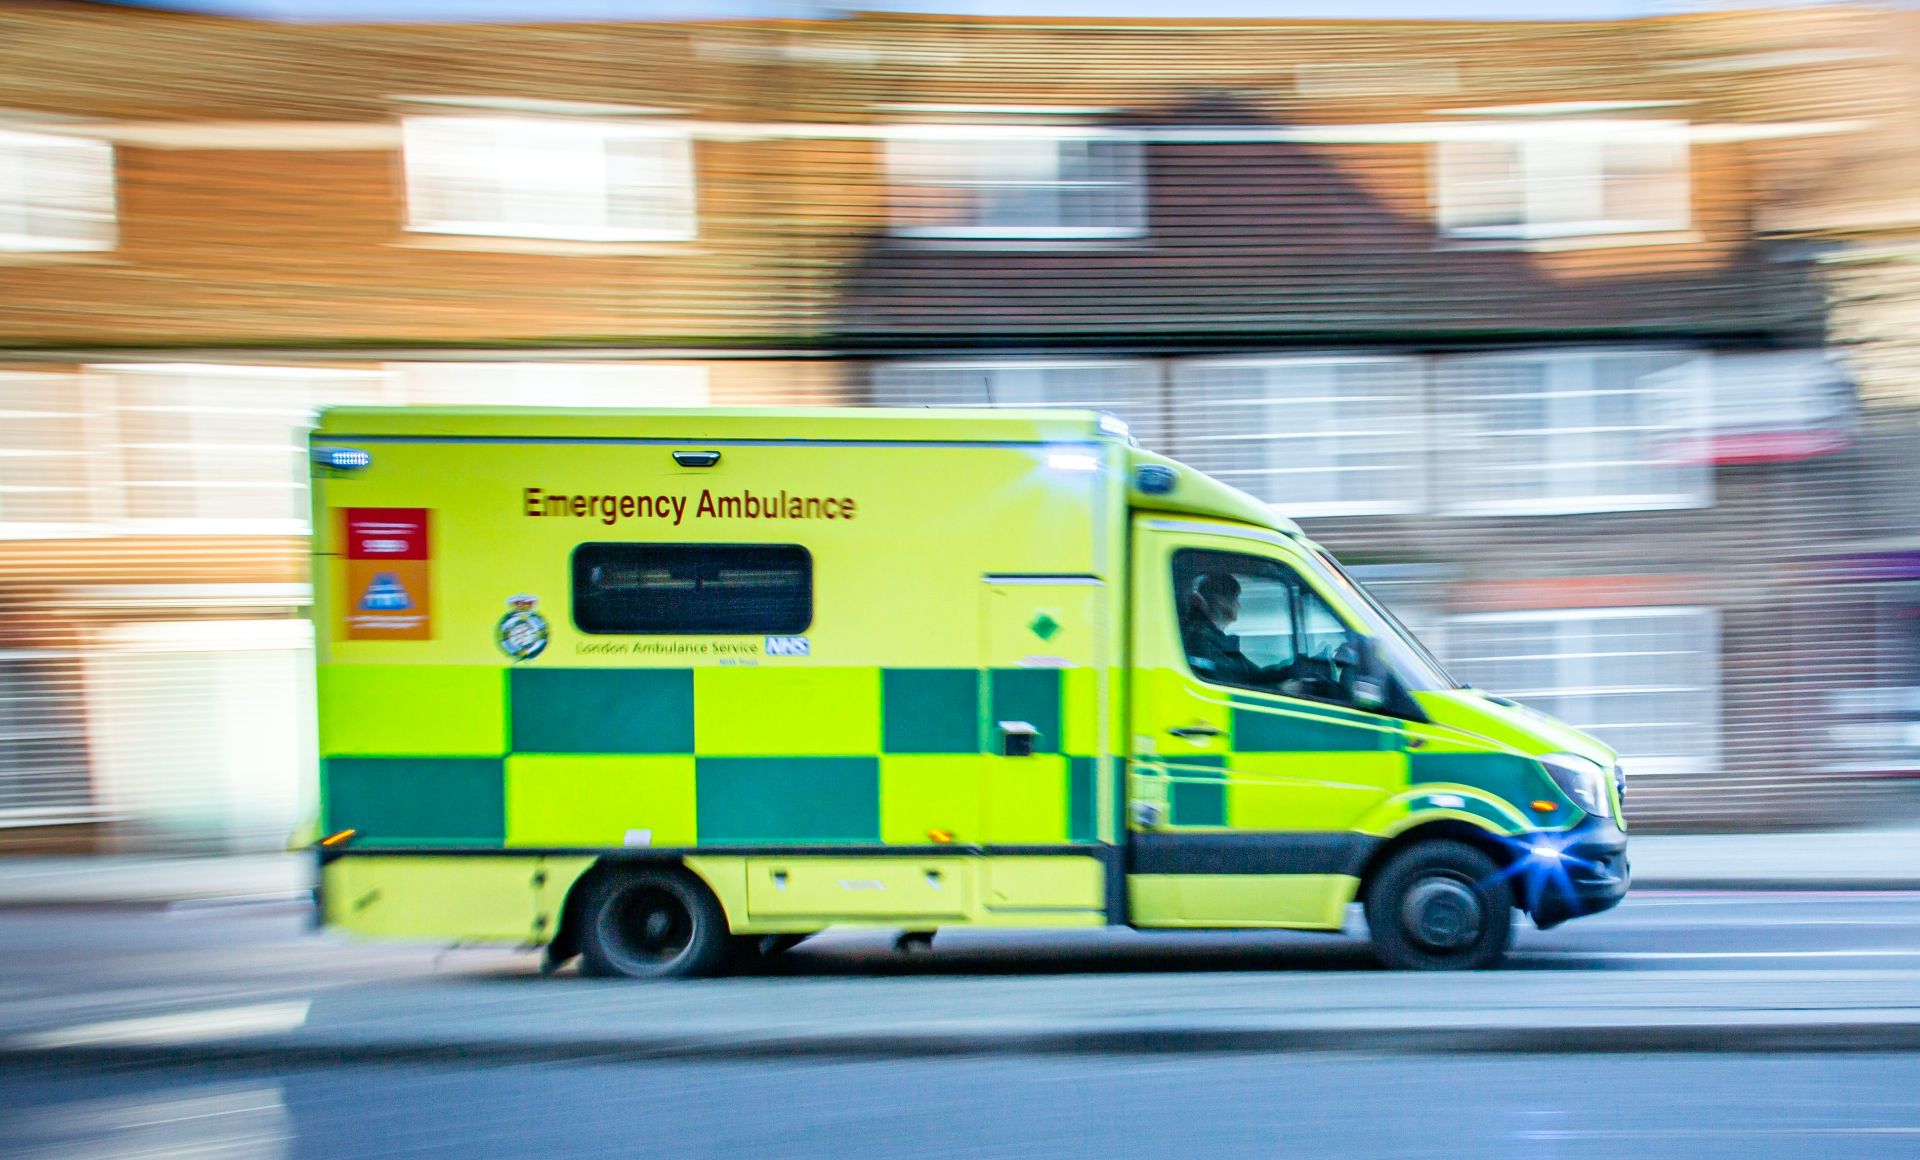 Lipsă de personal: armata vine în sprijinul spitalelor londoneze